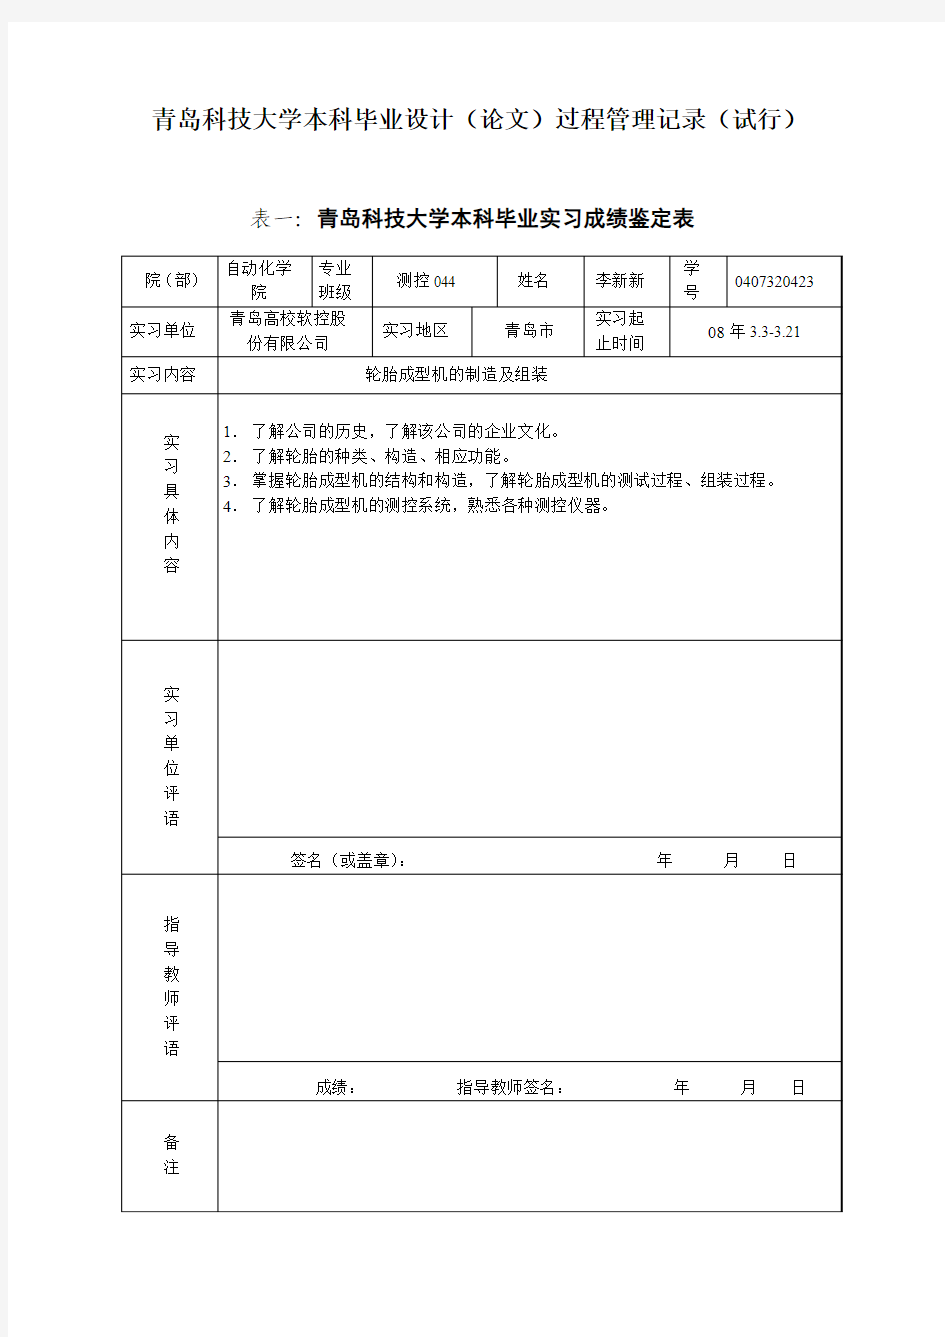 青岛科技大学本科毕业设计(论文)过程管理记录